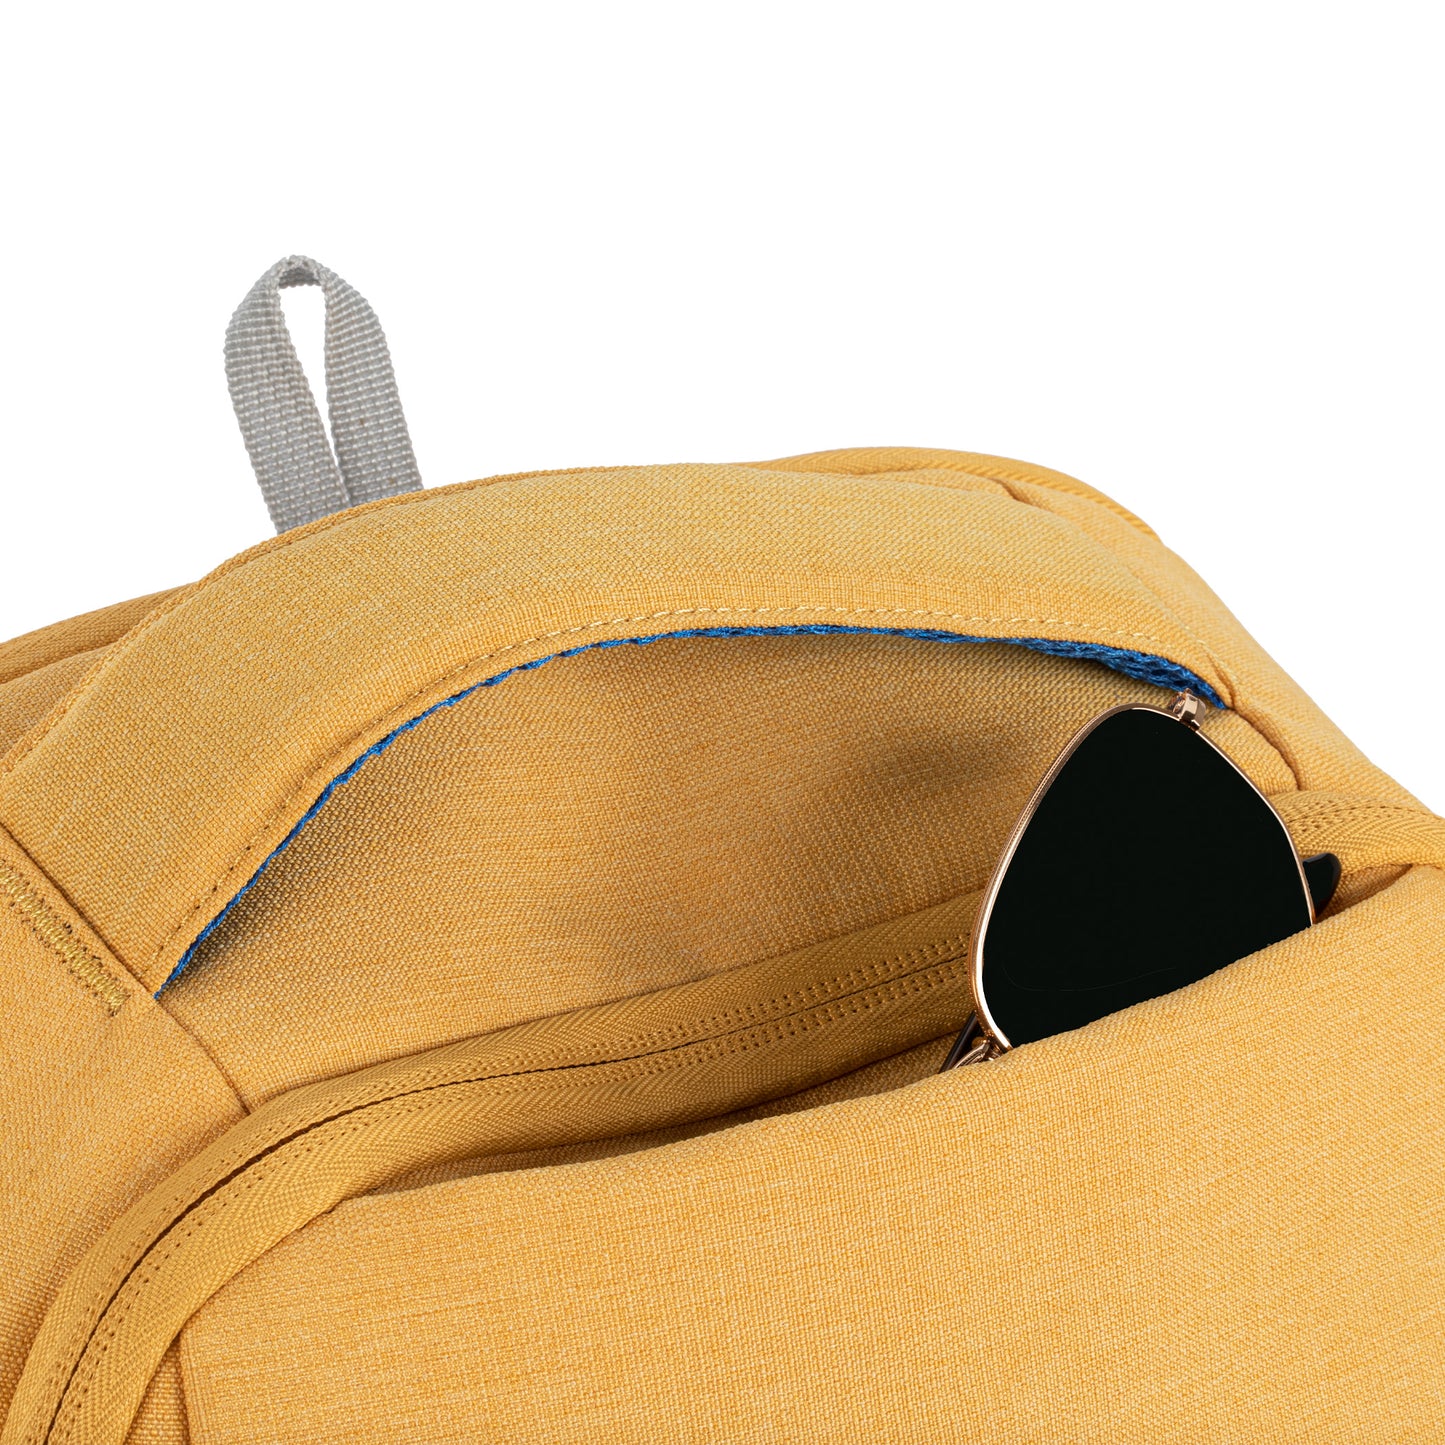 ファセット 20l バックパック(Facet 20L Backpack) - Yellow